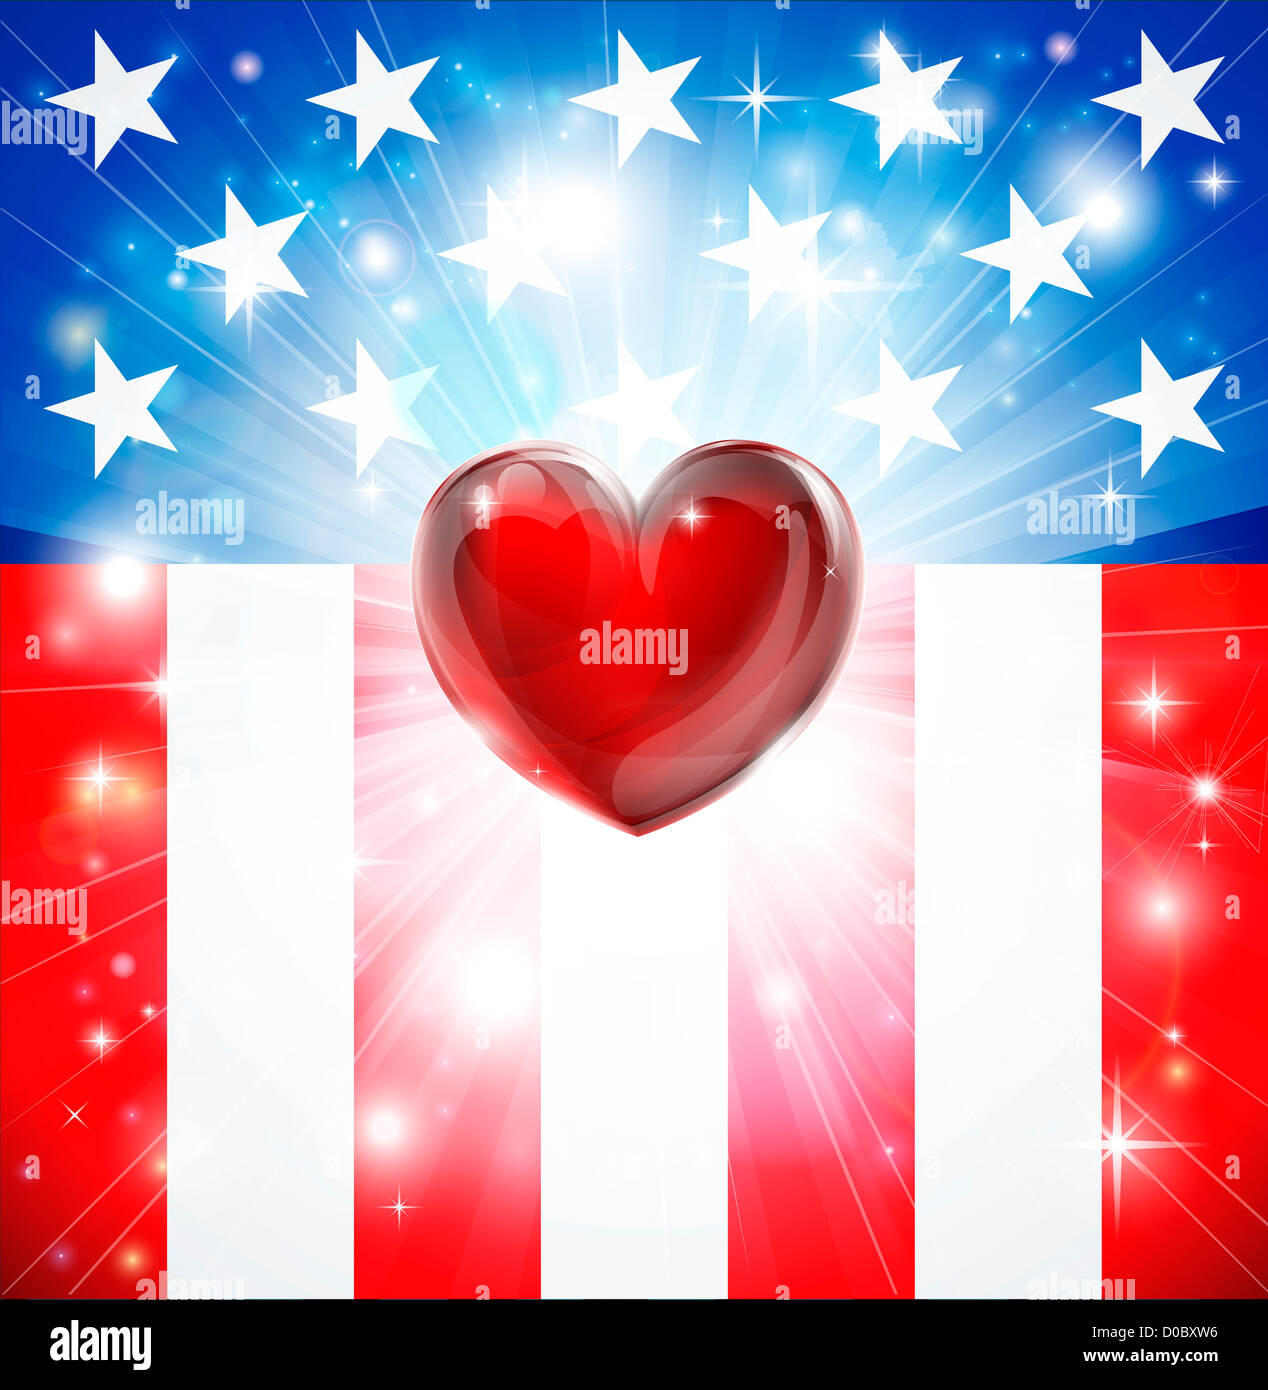 Amerikanische Flagge patriotischen Hintergrund mit Herz, Konzept für die Liebe zum Vaterland. Ideal für 4. Juli oder militärische Themen. Stockfoto